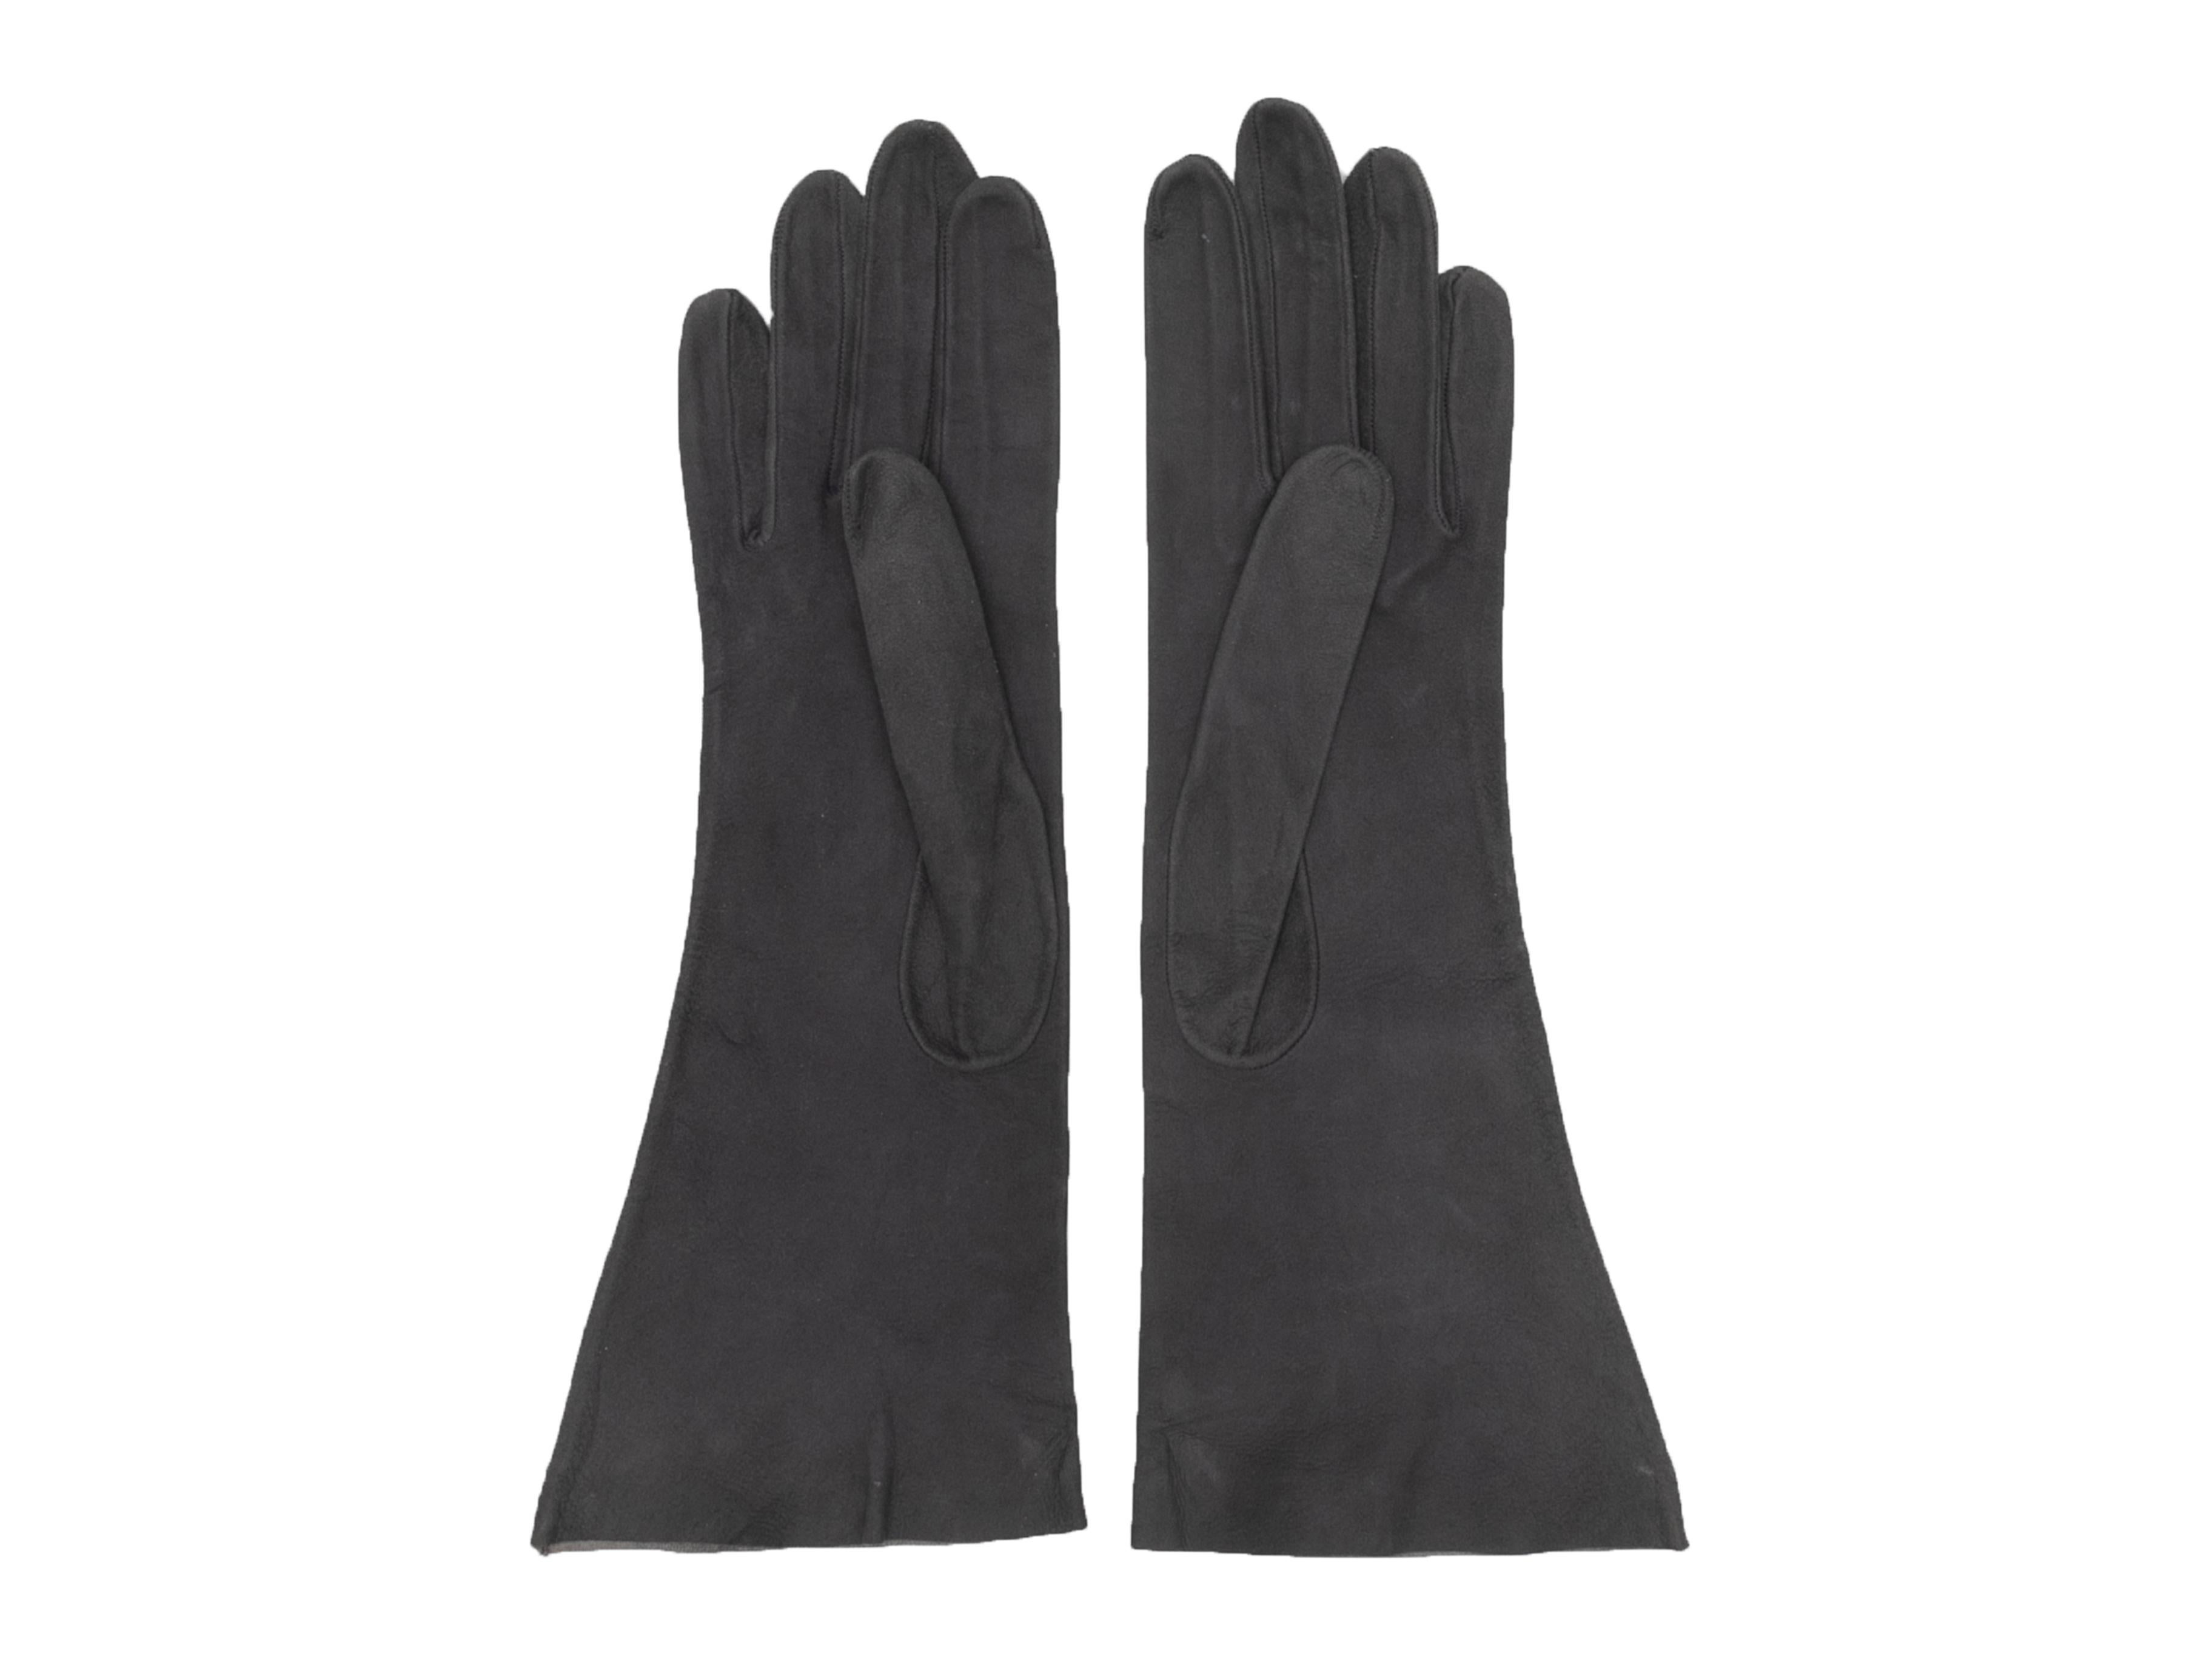 Vintage grey suede gloves by Hermes. 11